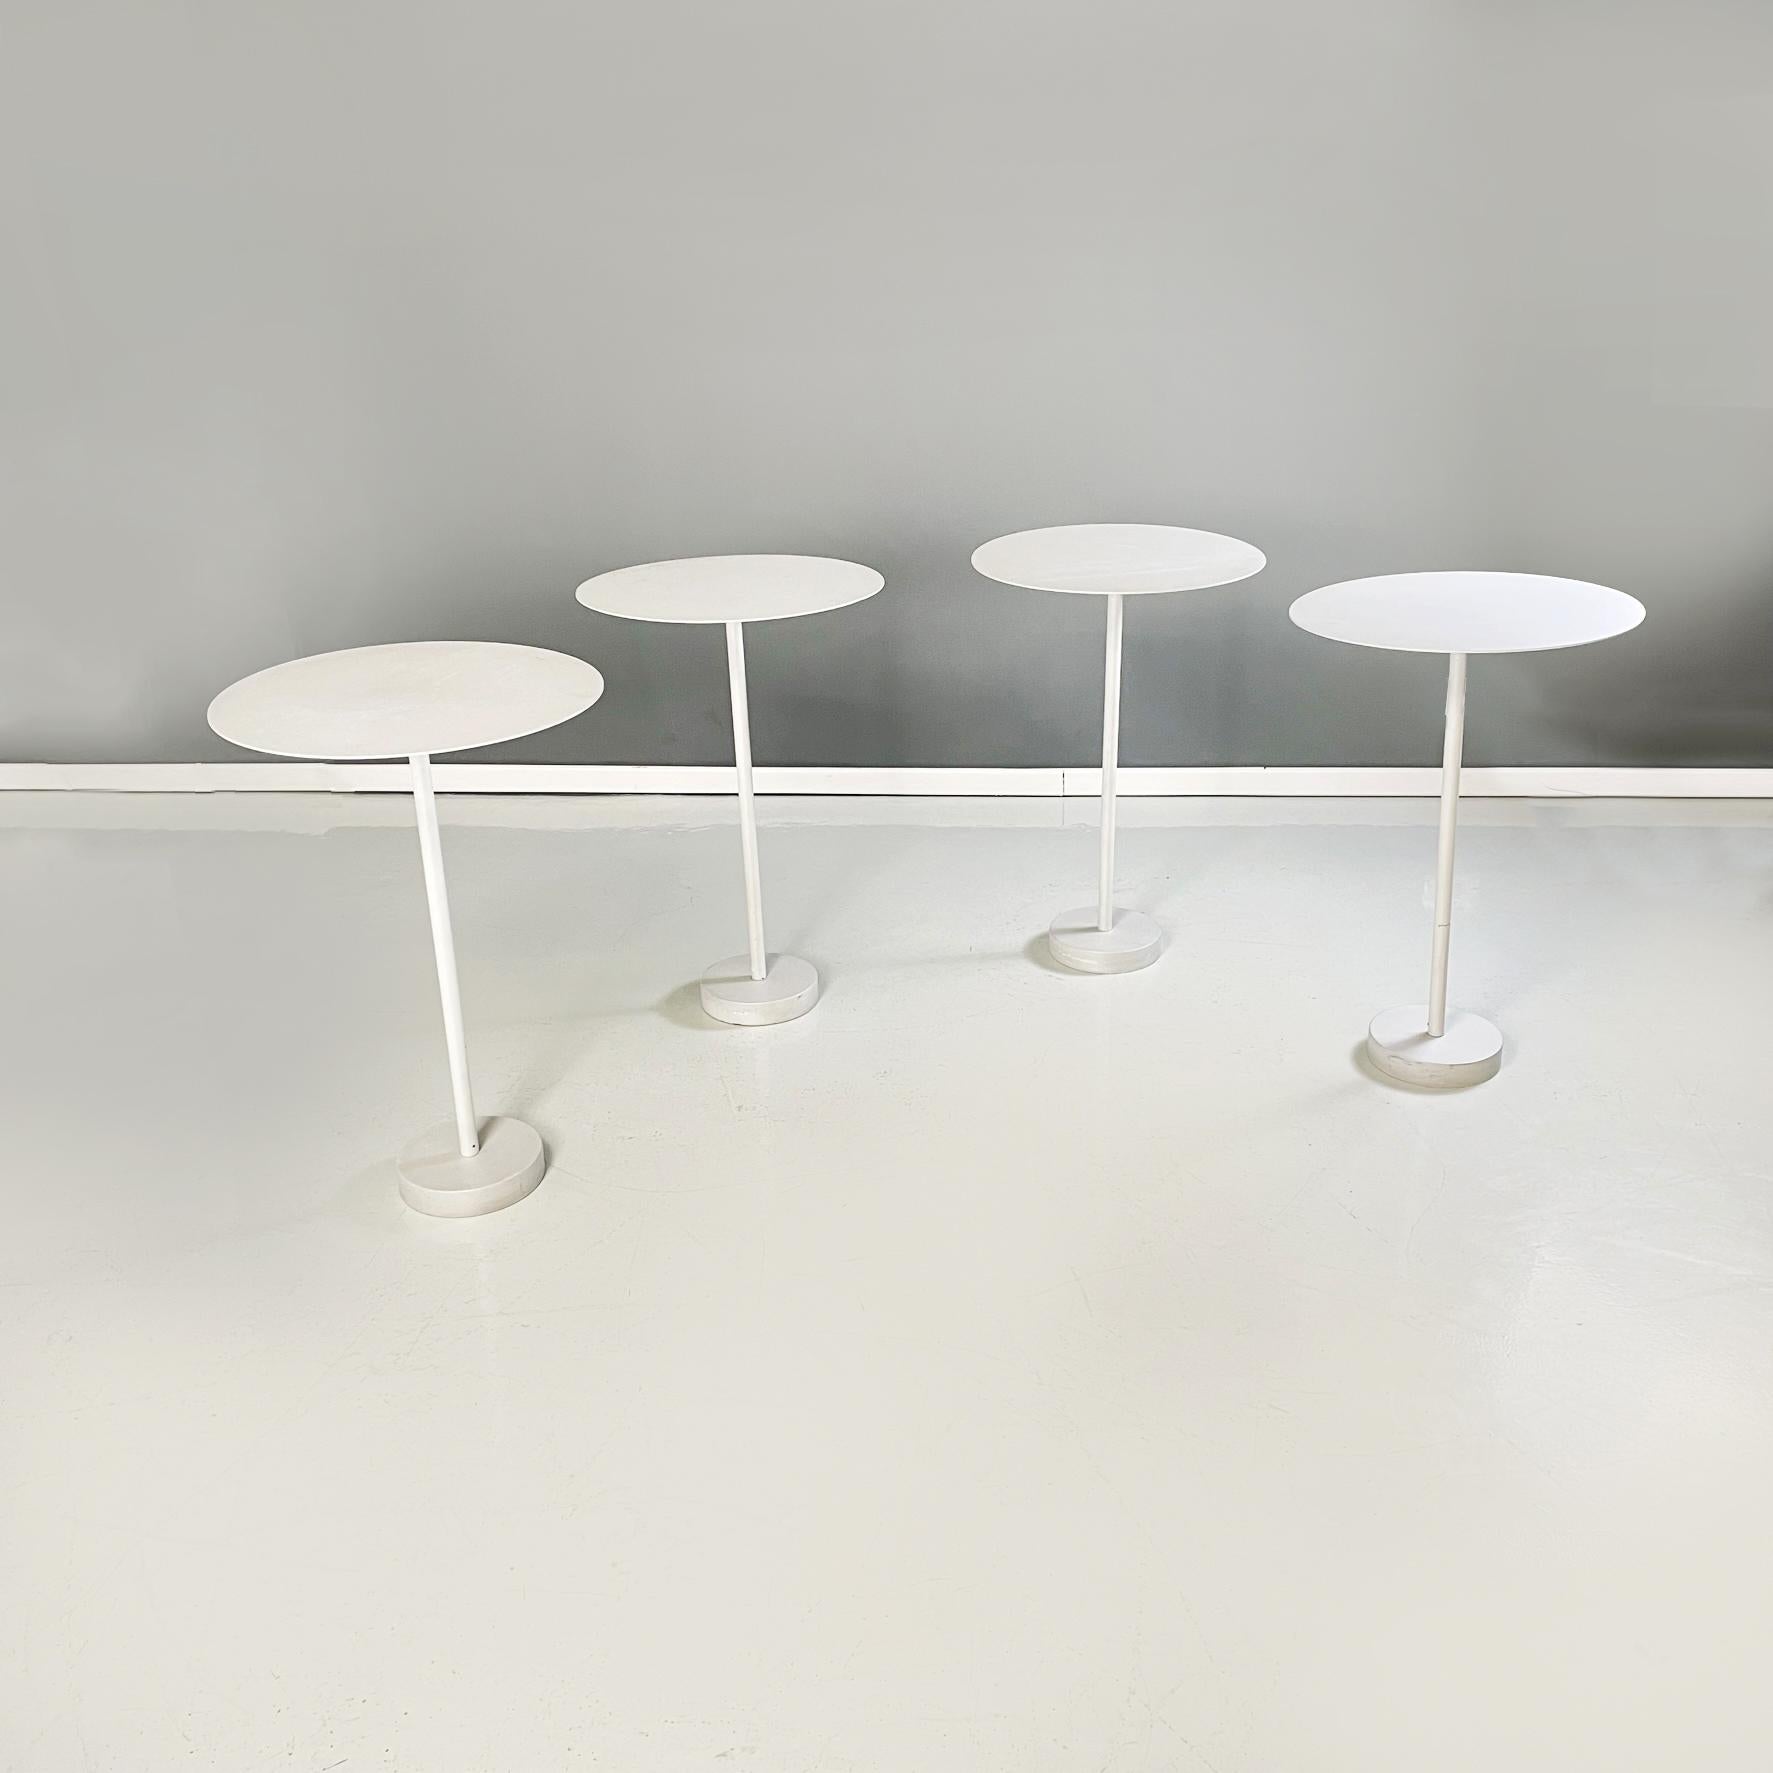 Italienische moderne Couchtische mod. Bincan Tische von Naoto Fukasawa für Danese Milano, 2000er Jahre
Satz von 4 fantastischen runden Couchtischen mod. Bincan Tische aus weiß lackiertem Metall. Die zentrale Struktur besteht aus einem Metallrohr und